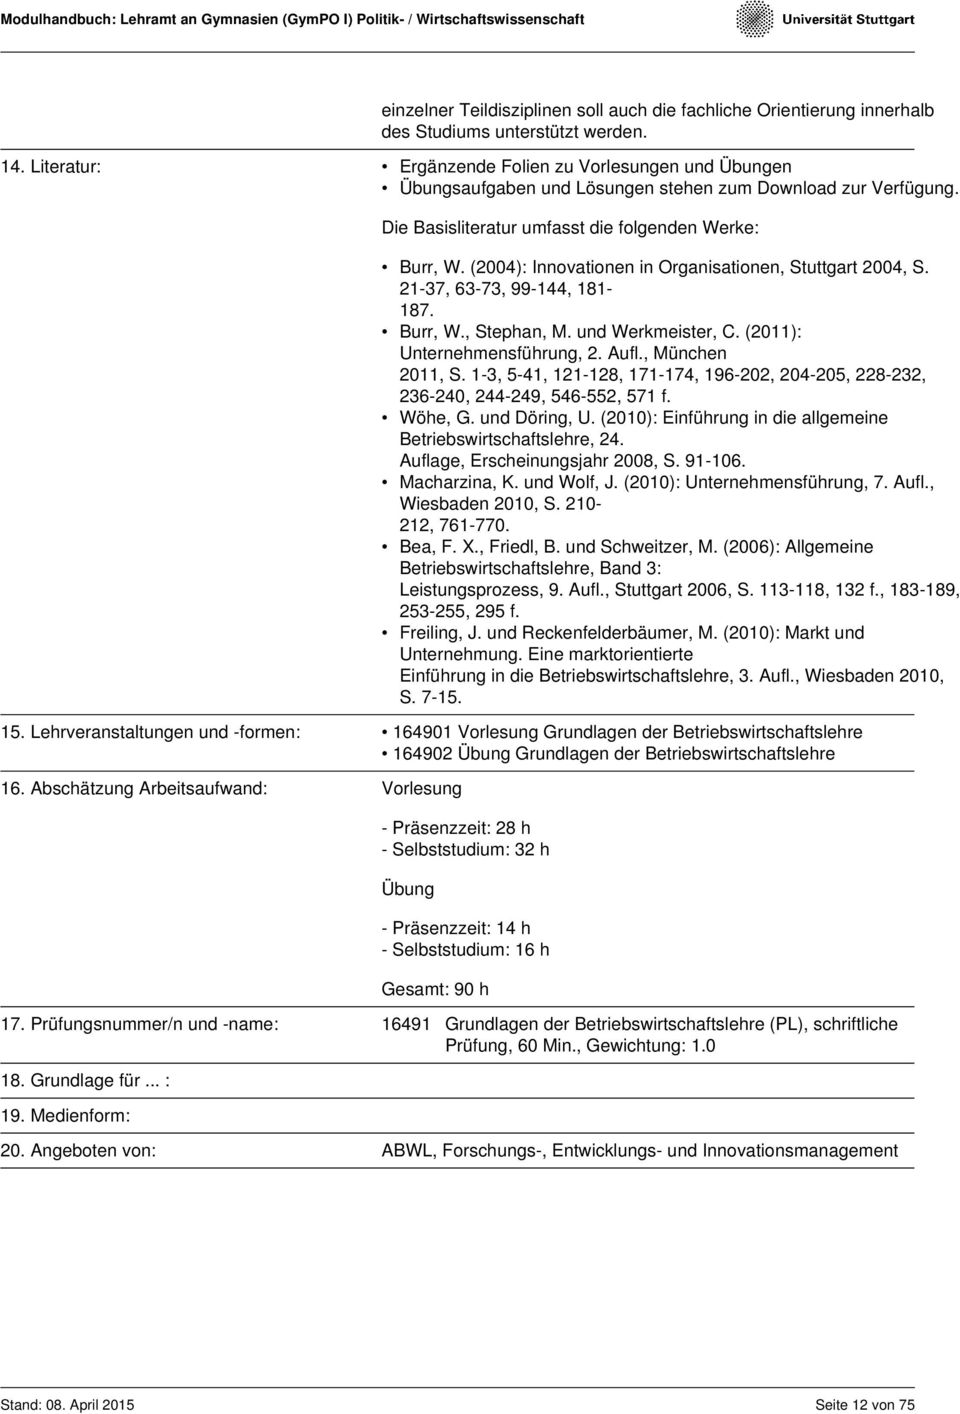 (2004): Innovationen in Organisationen, Stuttgart 2004, S. 21-37, 63-73, 99-144, 181-187. Burr, W., Stephan, M. und Werkmeister, C. (2011): Unternehmensführung, 2. Aufl., München 2011, S.